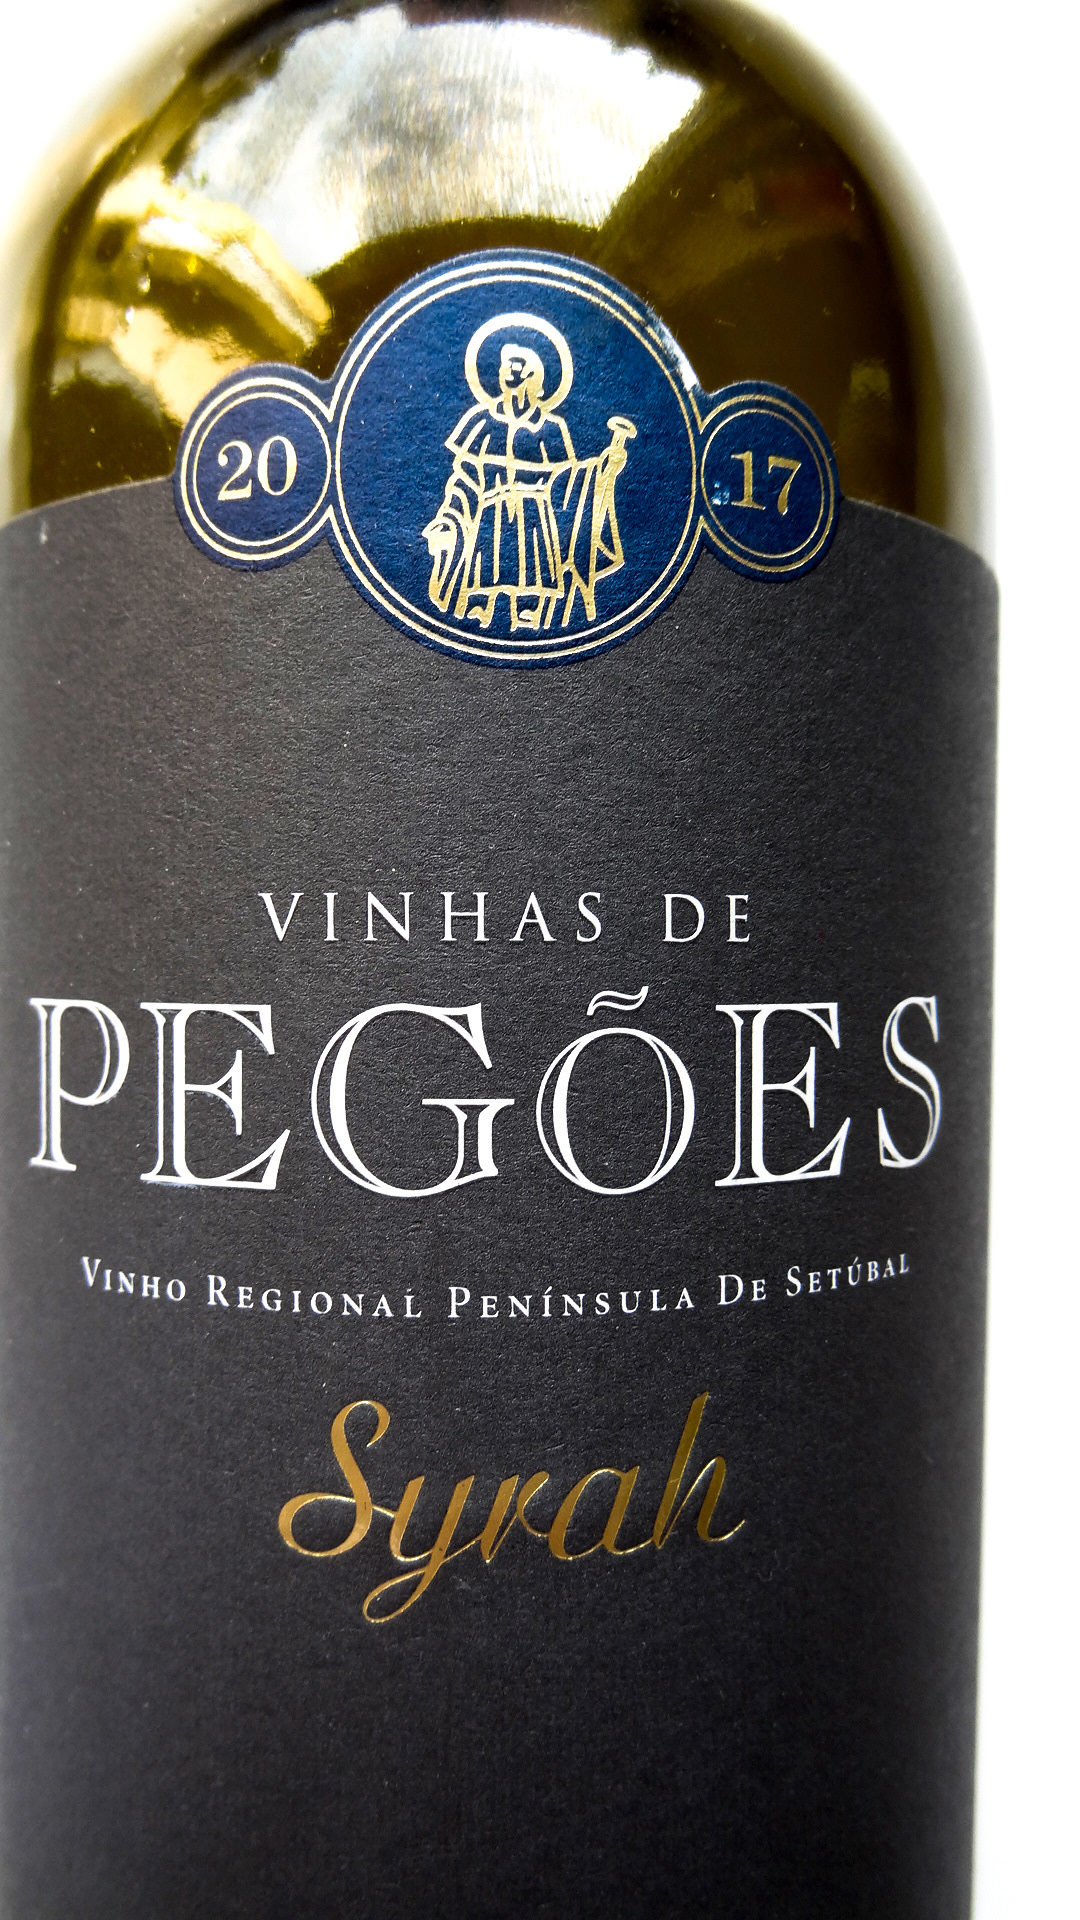 portugalskie wino czerwone wytrawne pegoes syrah shiraz wine angellovesdreams (5)